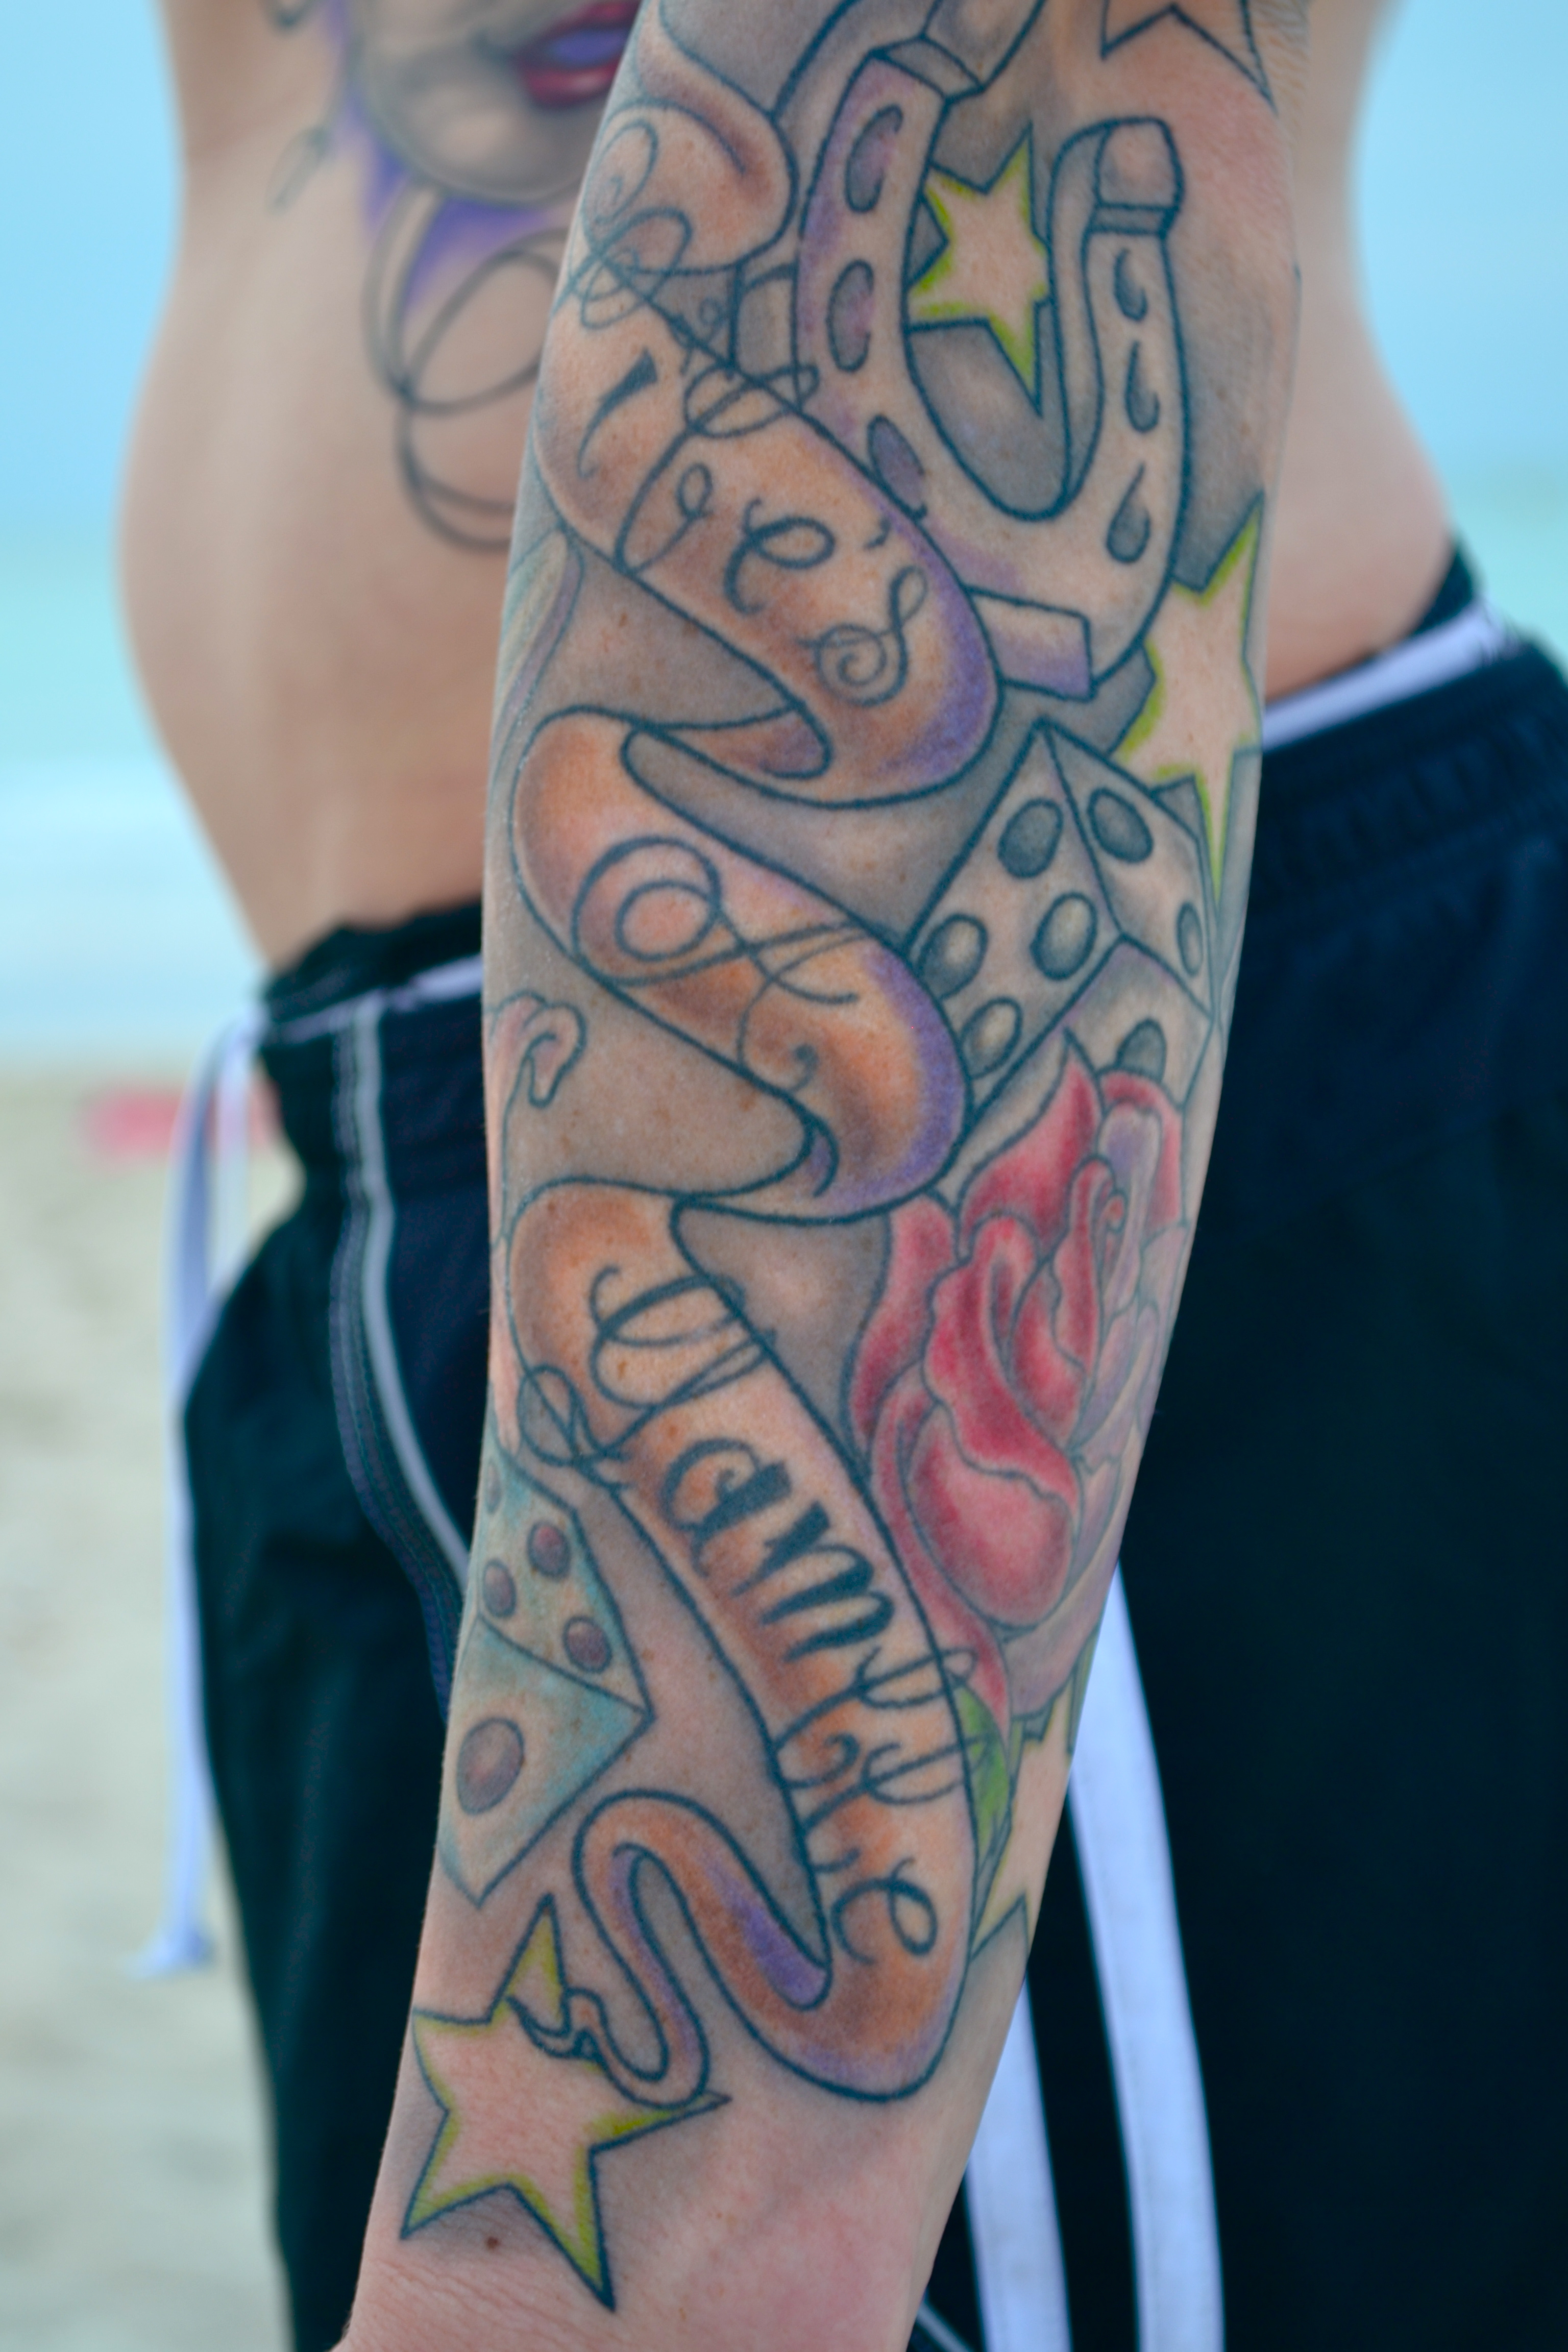 img/ed-gamble-arm-tattoo.jpg